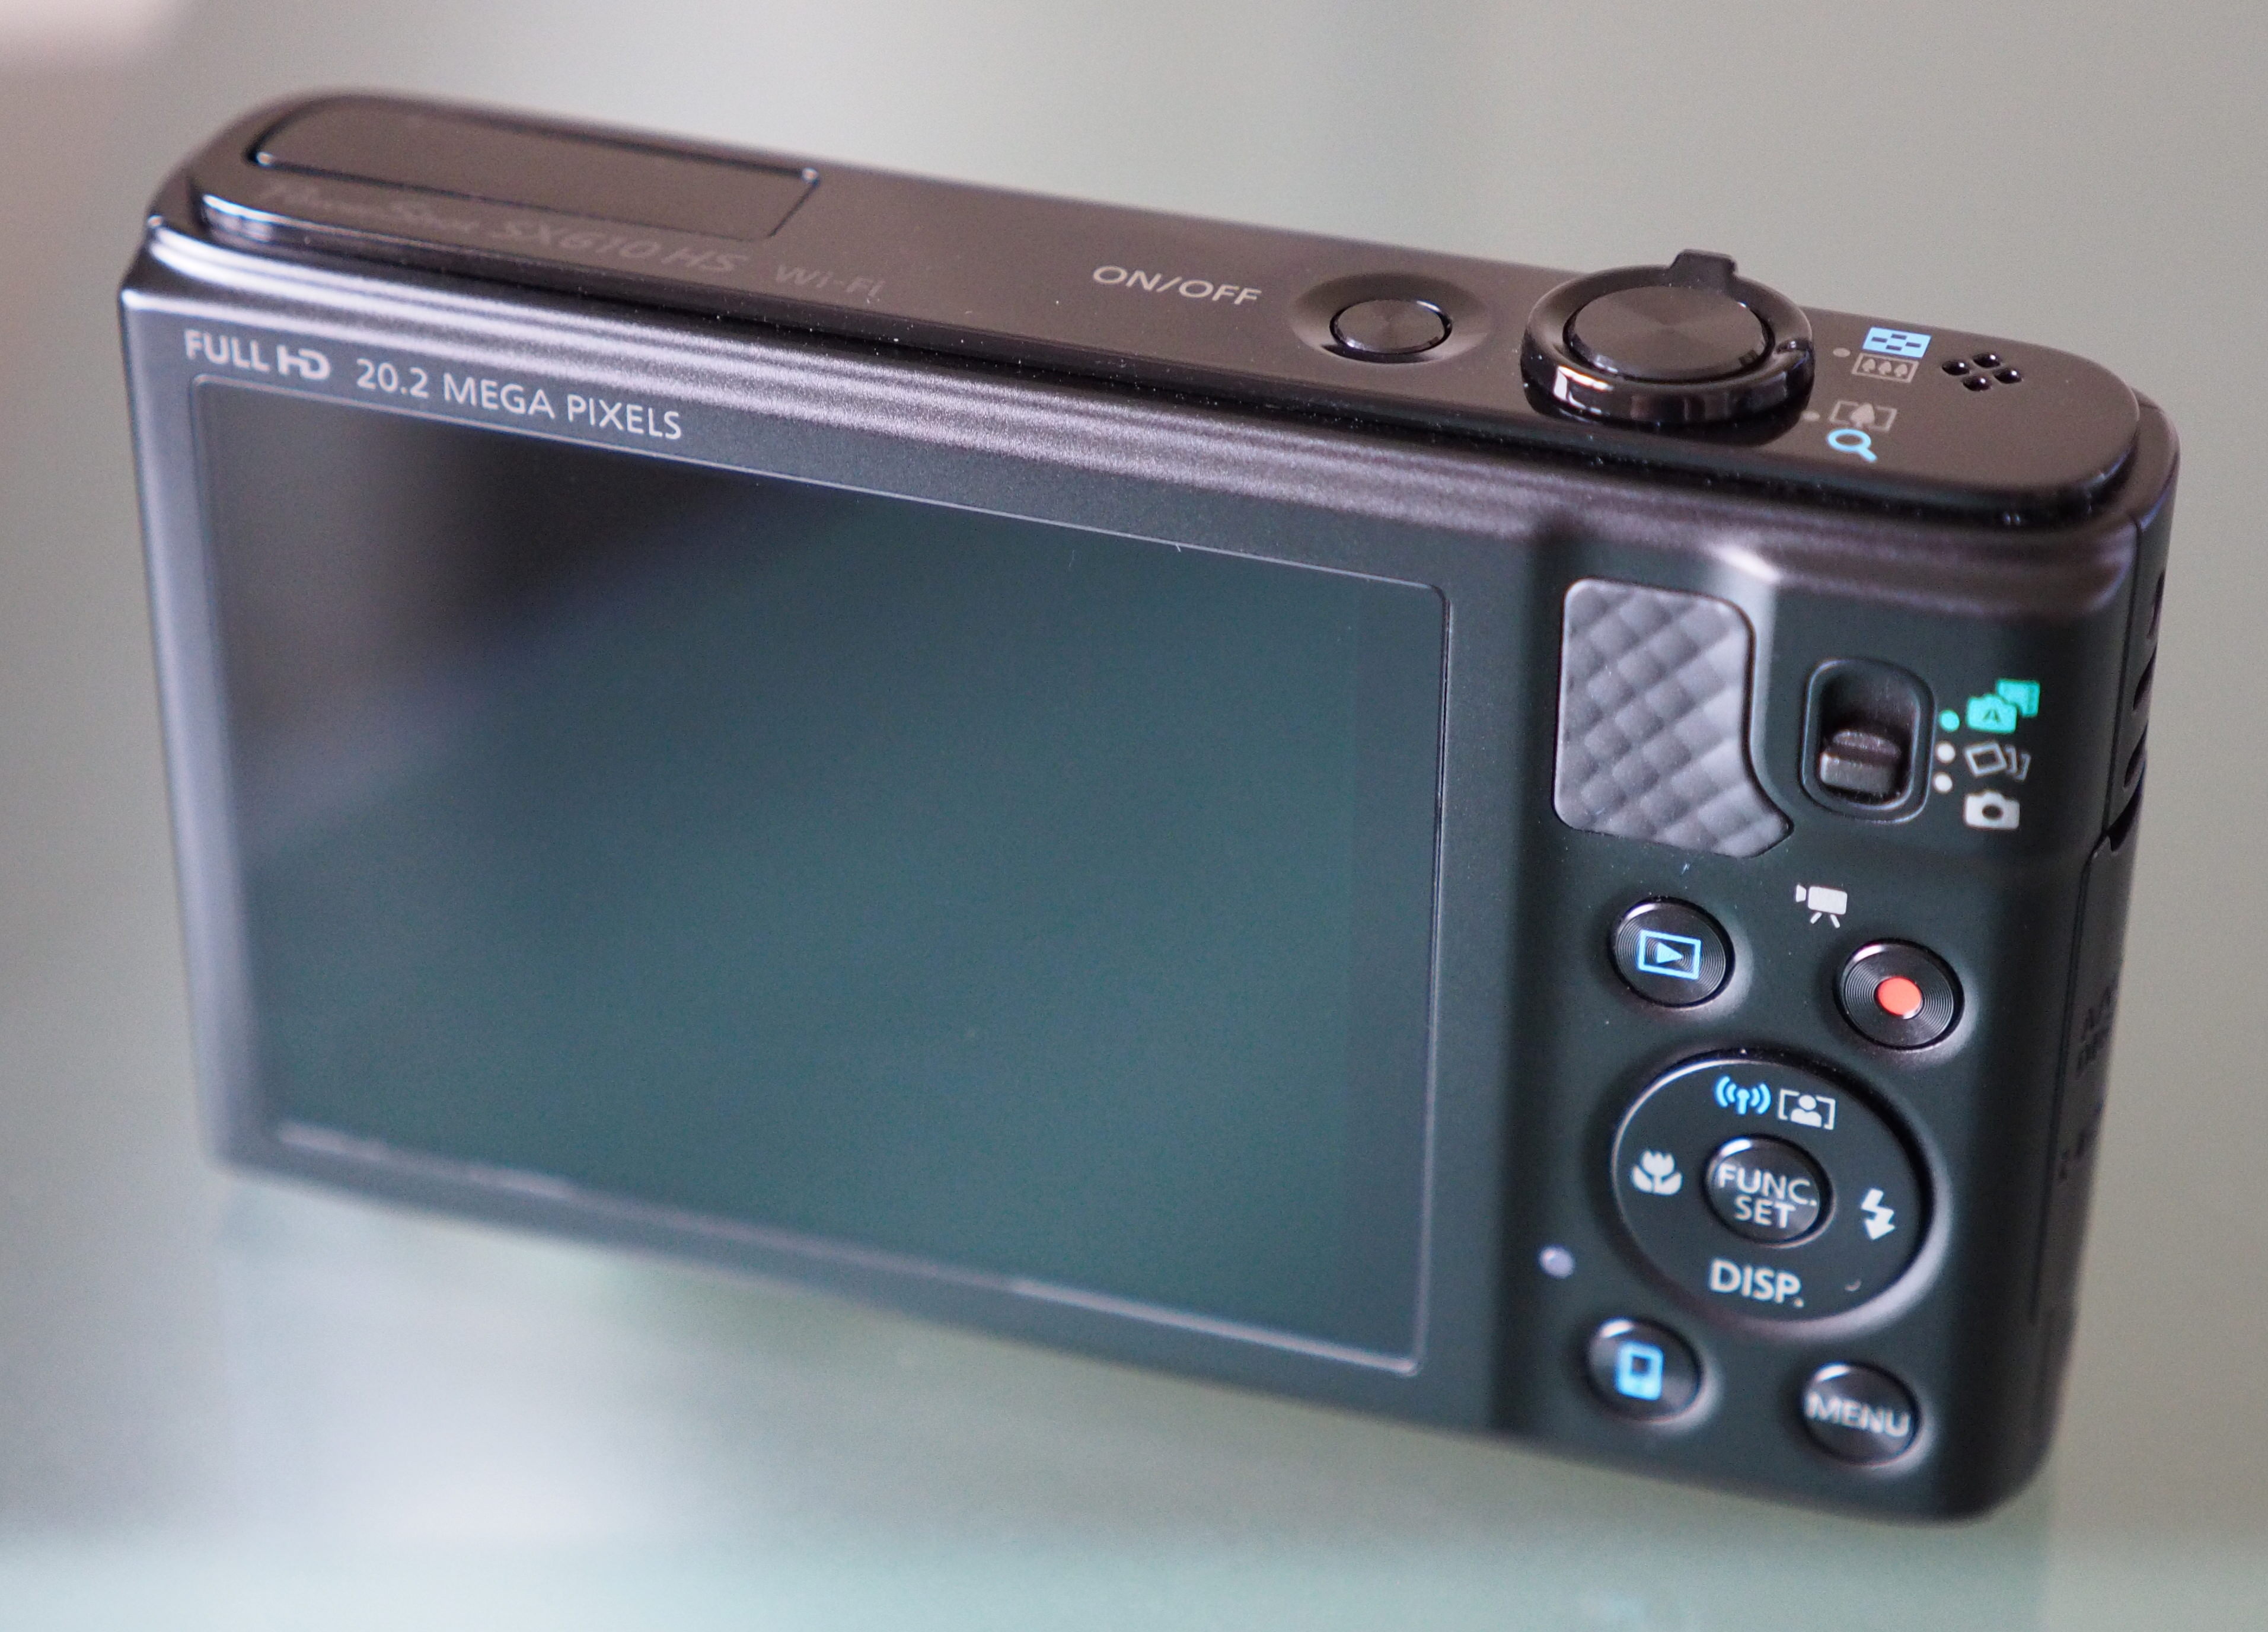 Canon Powershot SX610 HS Review